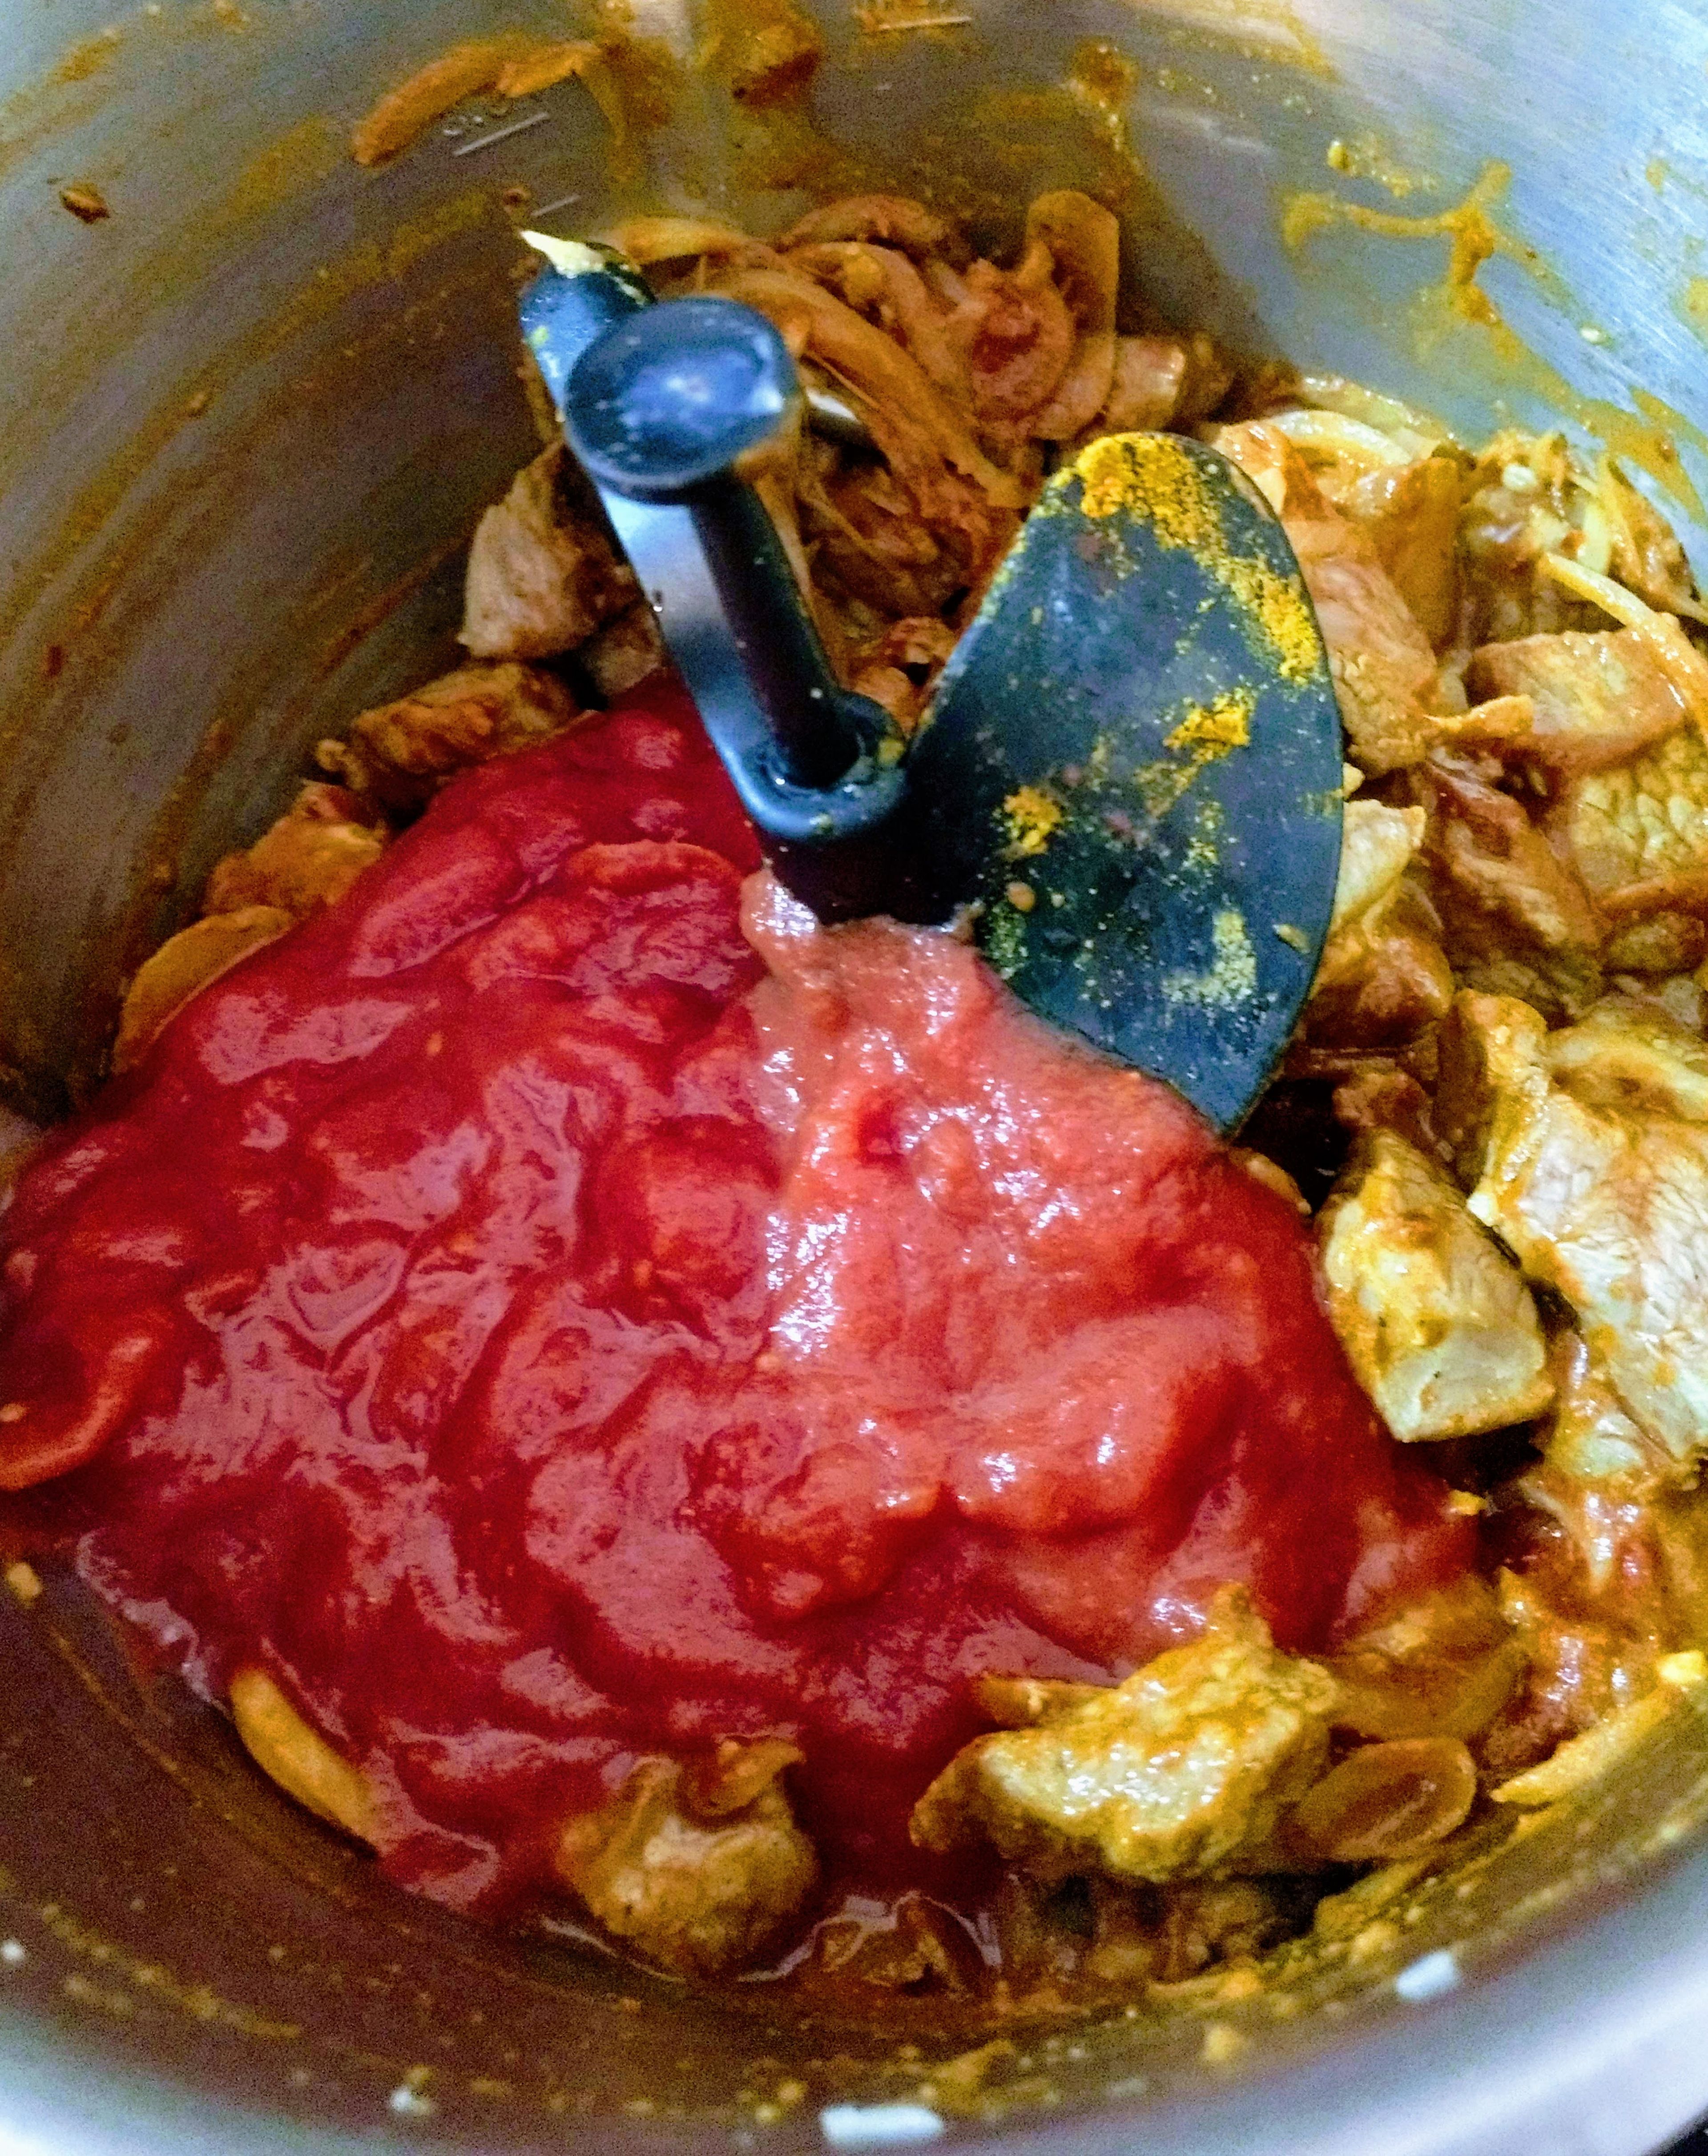 400 g gehackte Tomaten hinzugeben und 500 ml Brühe einwiegen. Den Deckel mit eingesetztem Messbecher schließen und alles durchmischen, erwärmen und nochmals abschmecken (3D-Rührer | Stufe 3 | 100°C | 3 Min.).